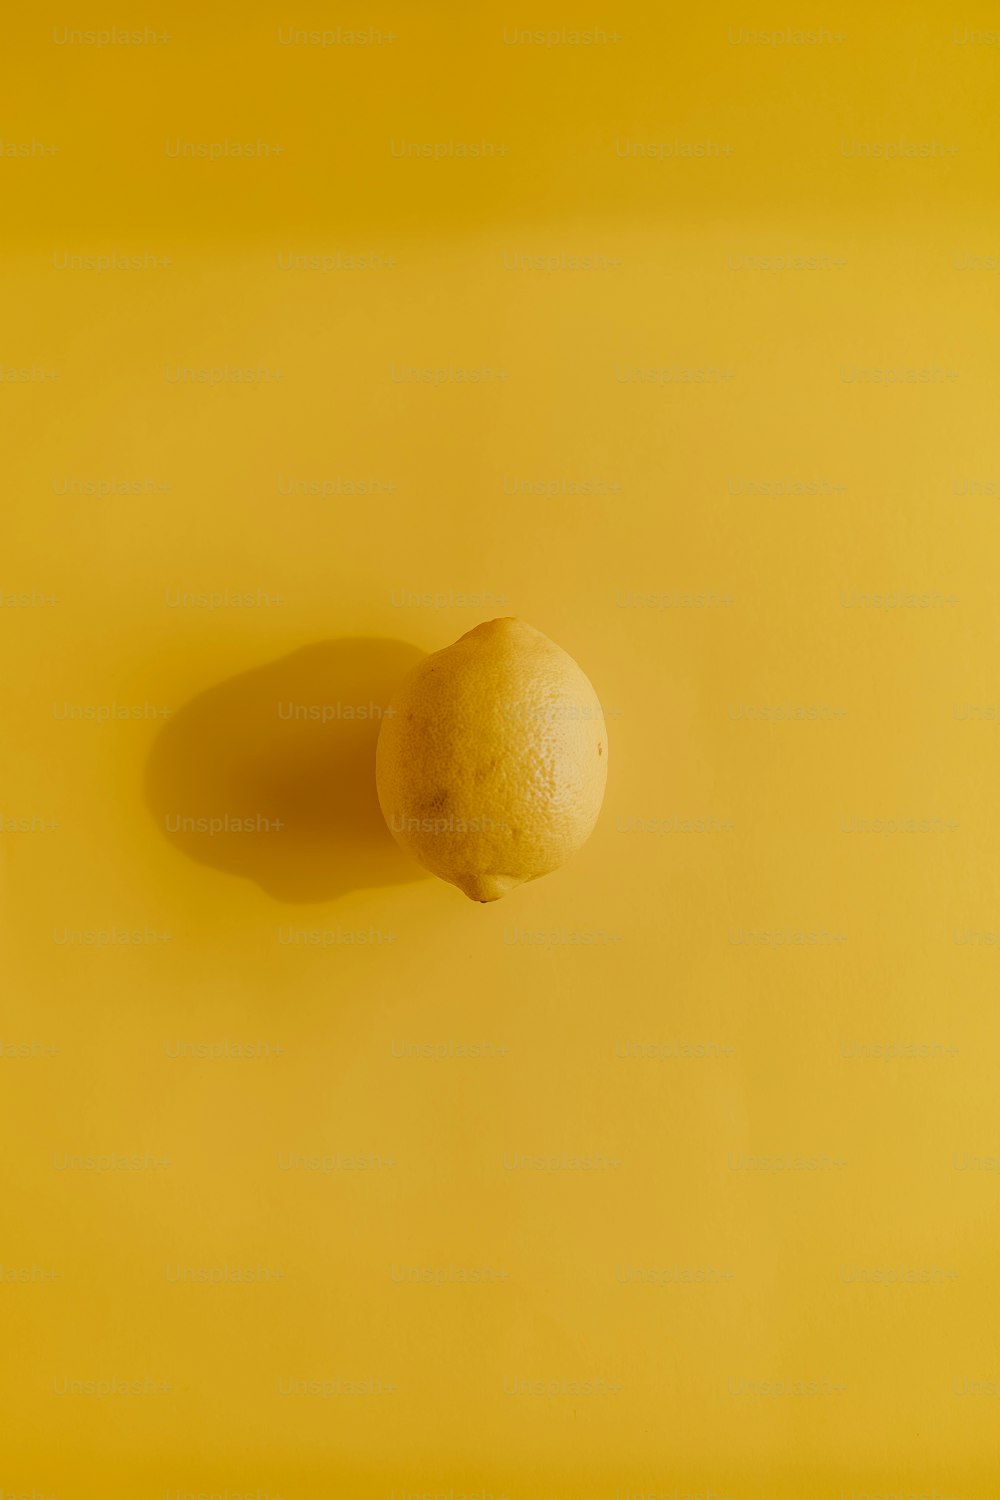 un limone seduto sopra una superficie gialla